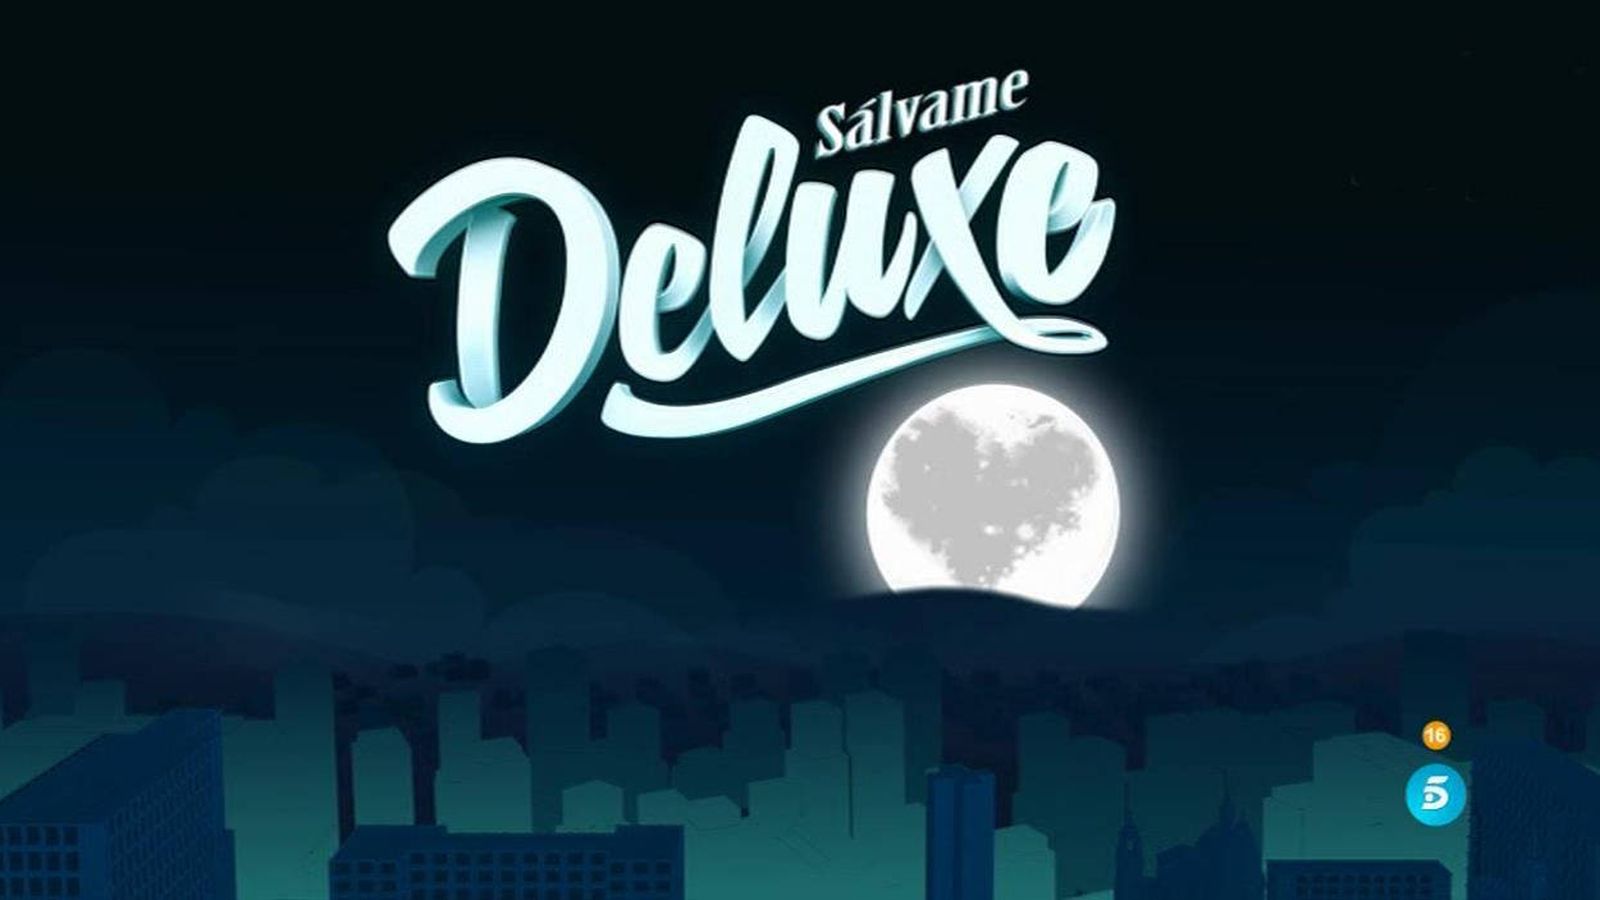 Foto: 'Sálvame deluxe' se mantiene imbatible en la noche del viernes